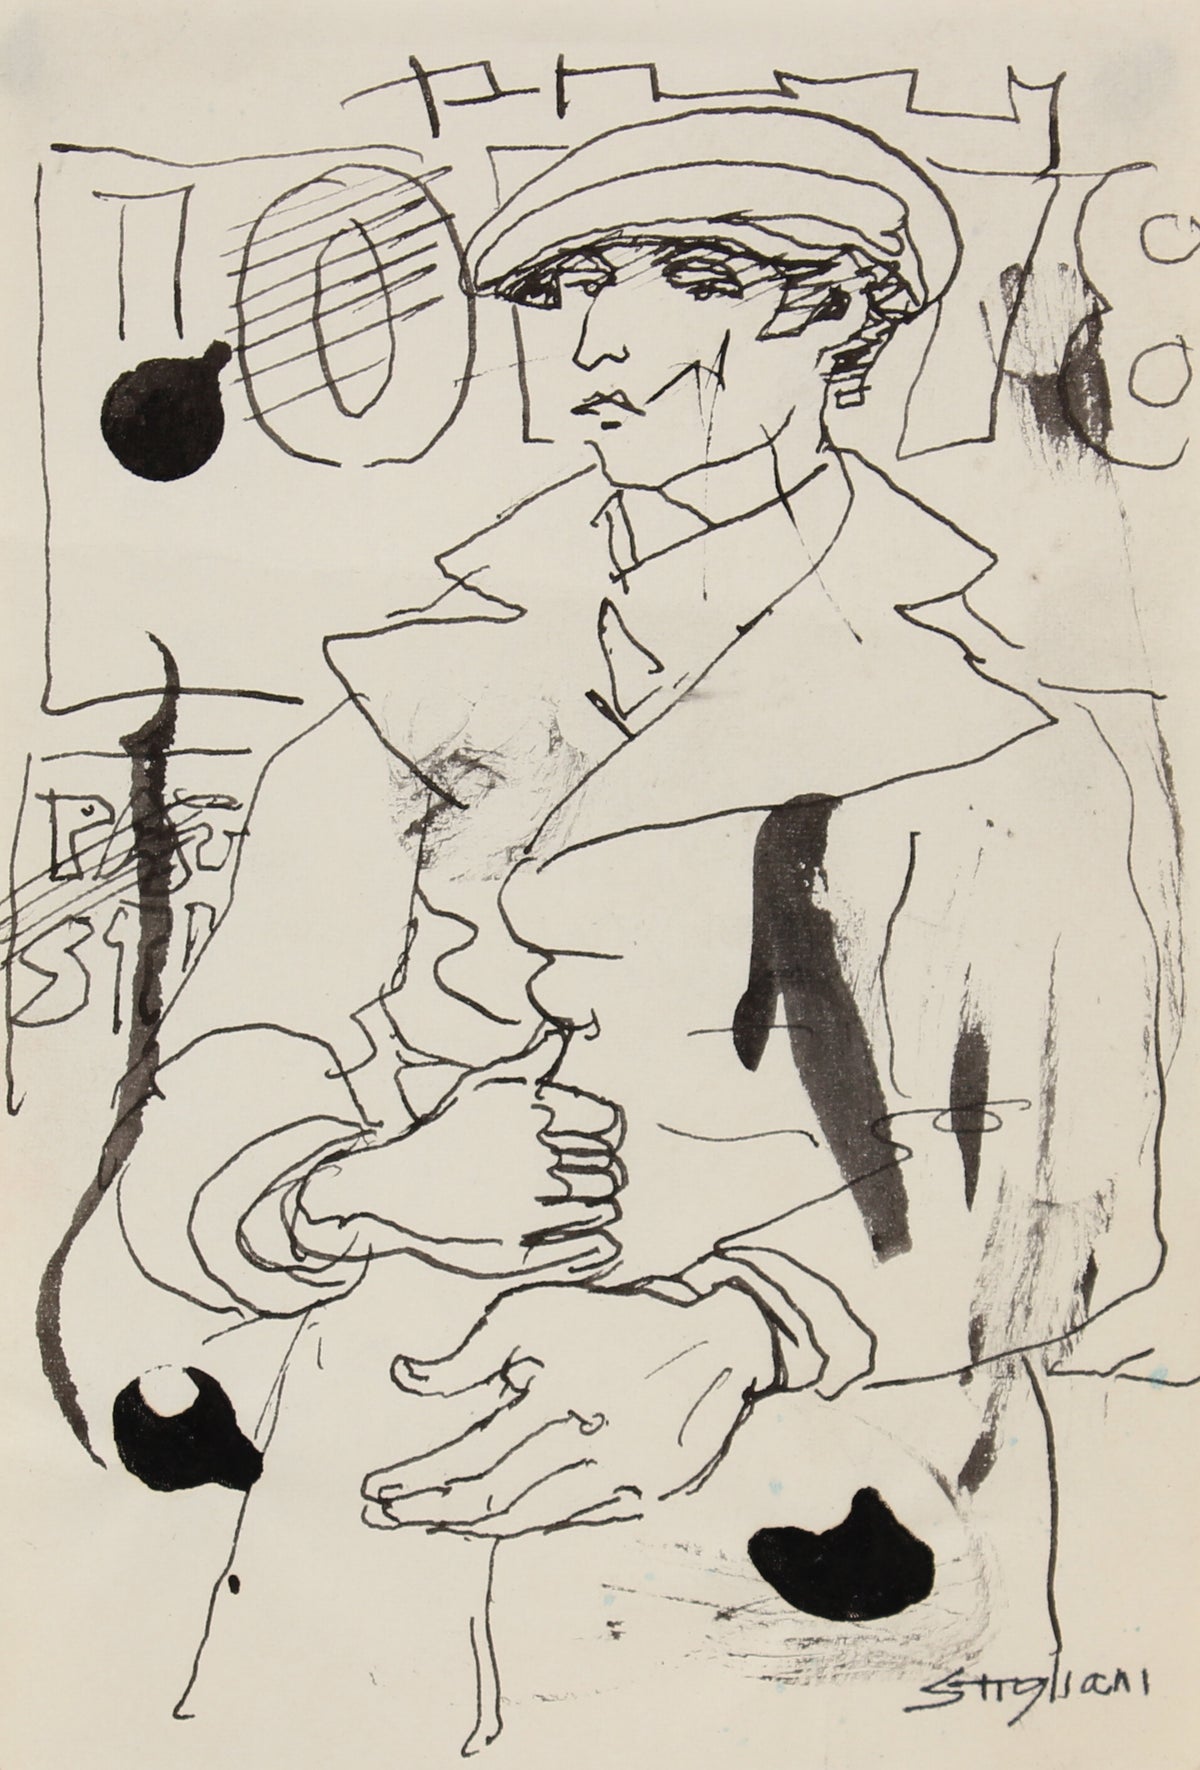 Modernist Sketch of a Man in a Trenchcoat&lt;br&gt;20th Century Ink&lt;br&gt;&lt;br&gt;#90606